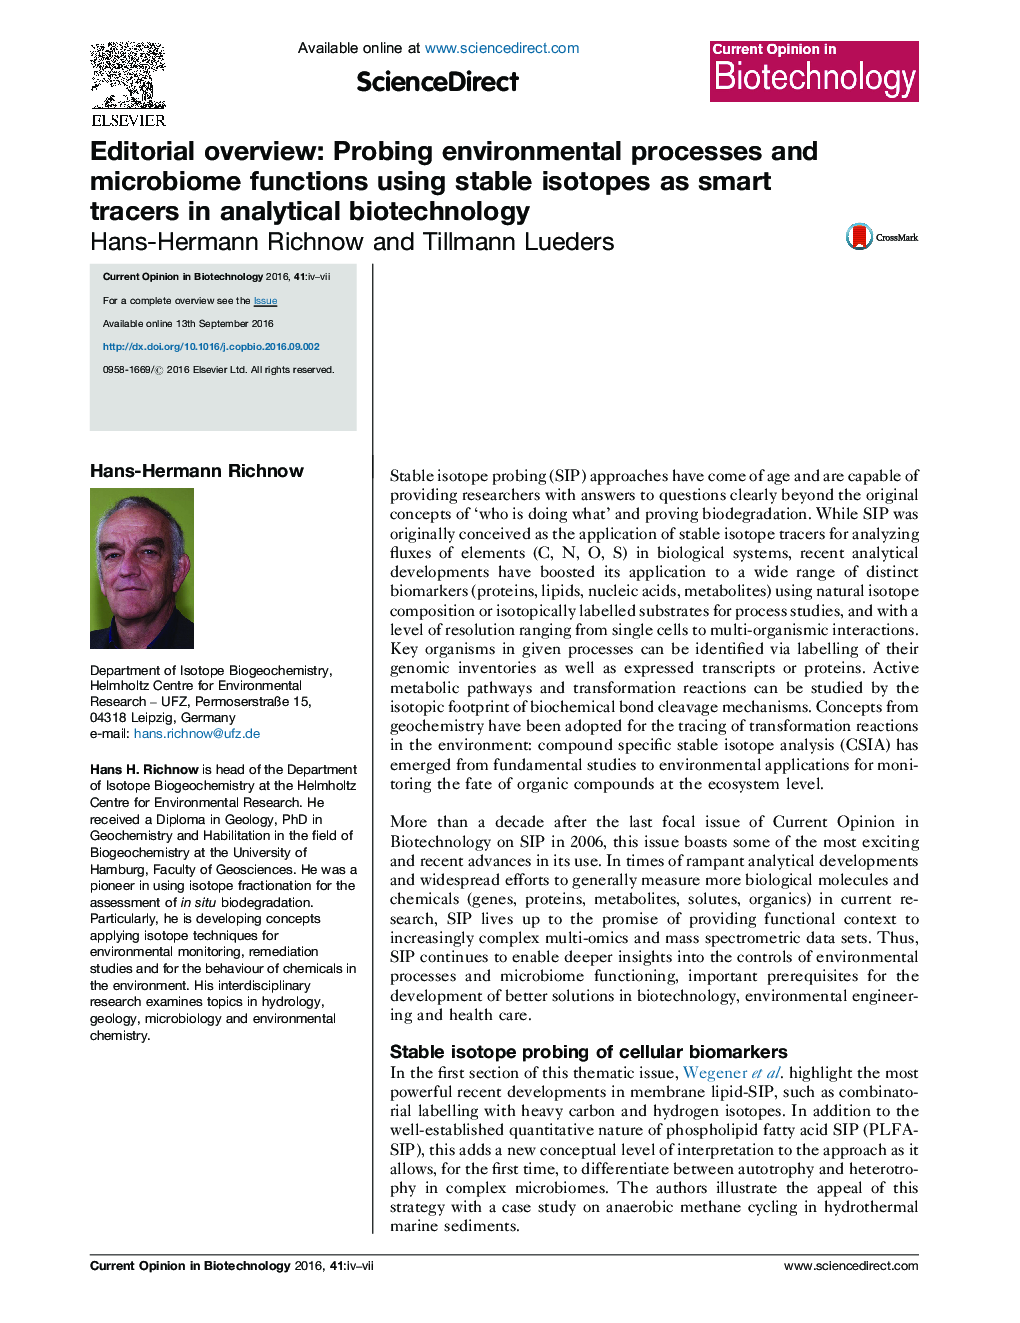 خلاصه مقاله: بررسی پروسه های محیطی و توابع میکروبیومی با استفاده از ایزوتوپ های پایدار به عنوان ردیاب های هوشمند در بیوتکنولوژی تحلیلی 